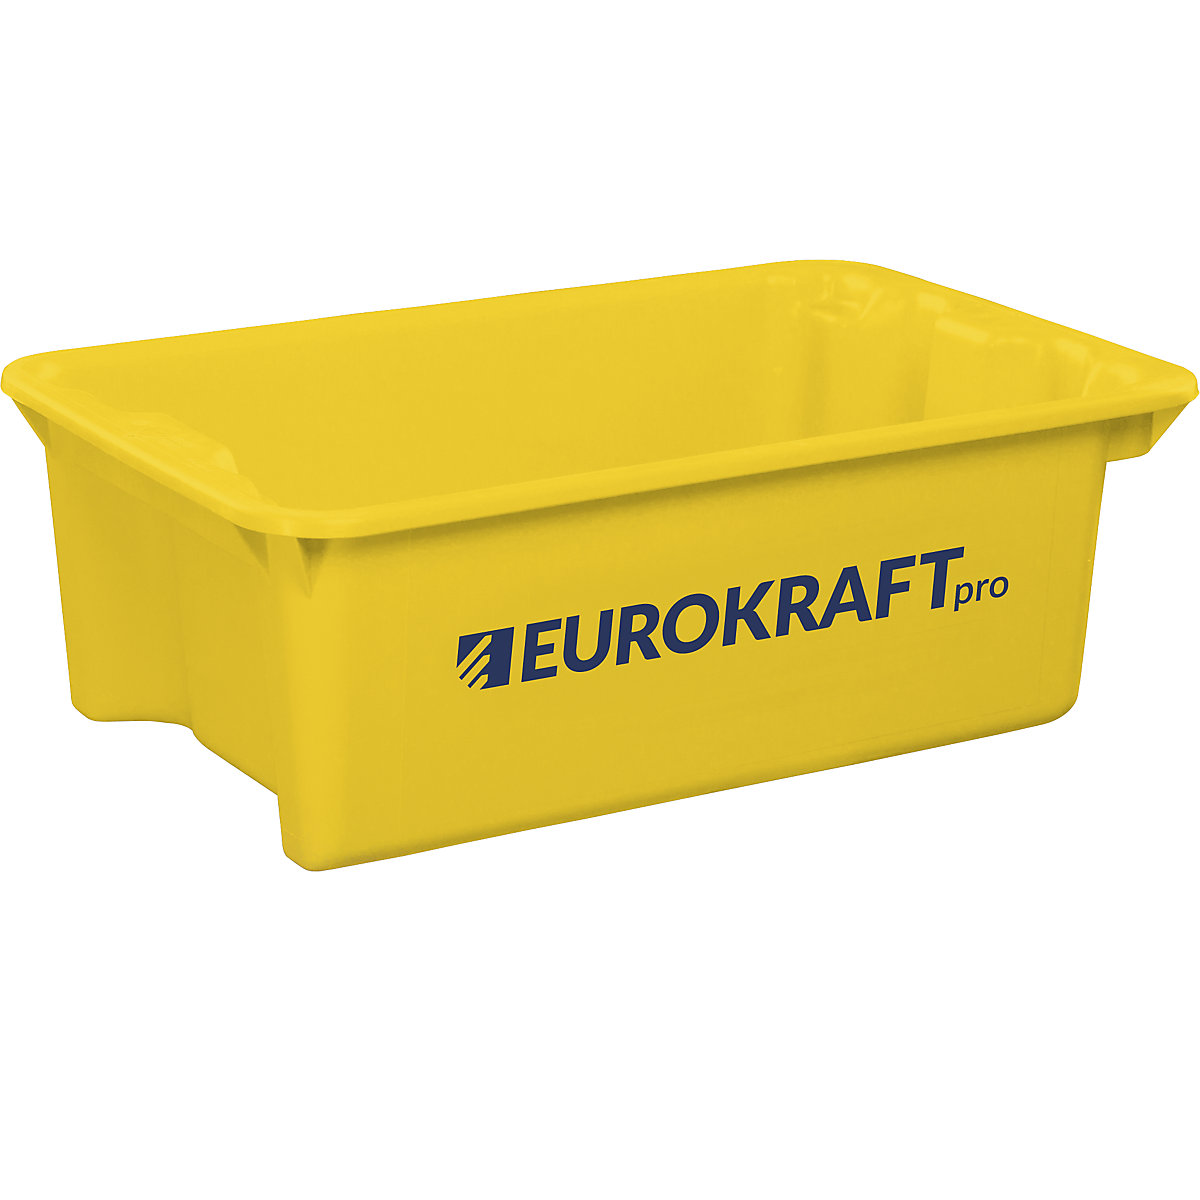 EUROKRAFTpro – Zasučna posoda za zlaganje iz polipropilena, primernega za živila, prostornina 34 l, DE 3 kosi, stene in dno zaprti, rumena